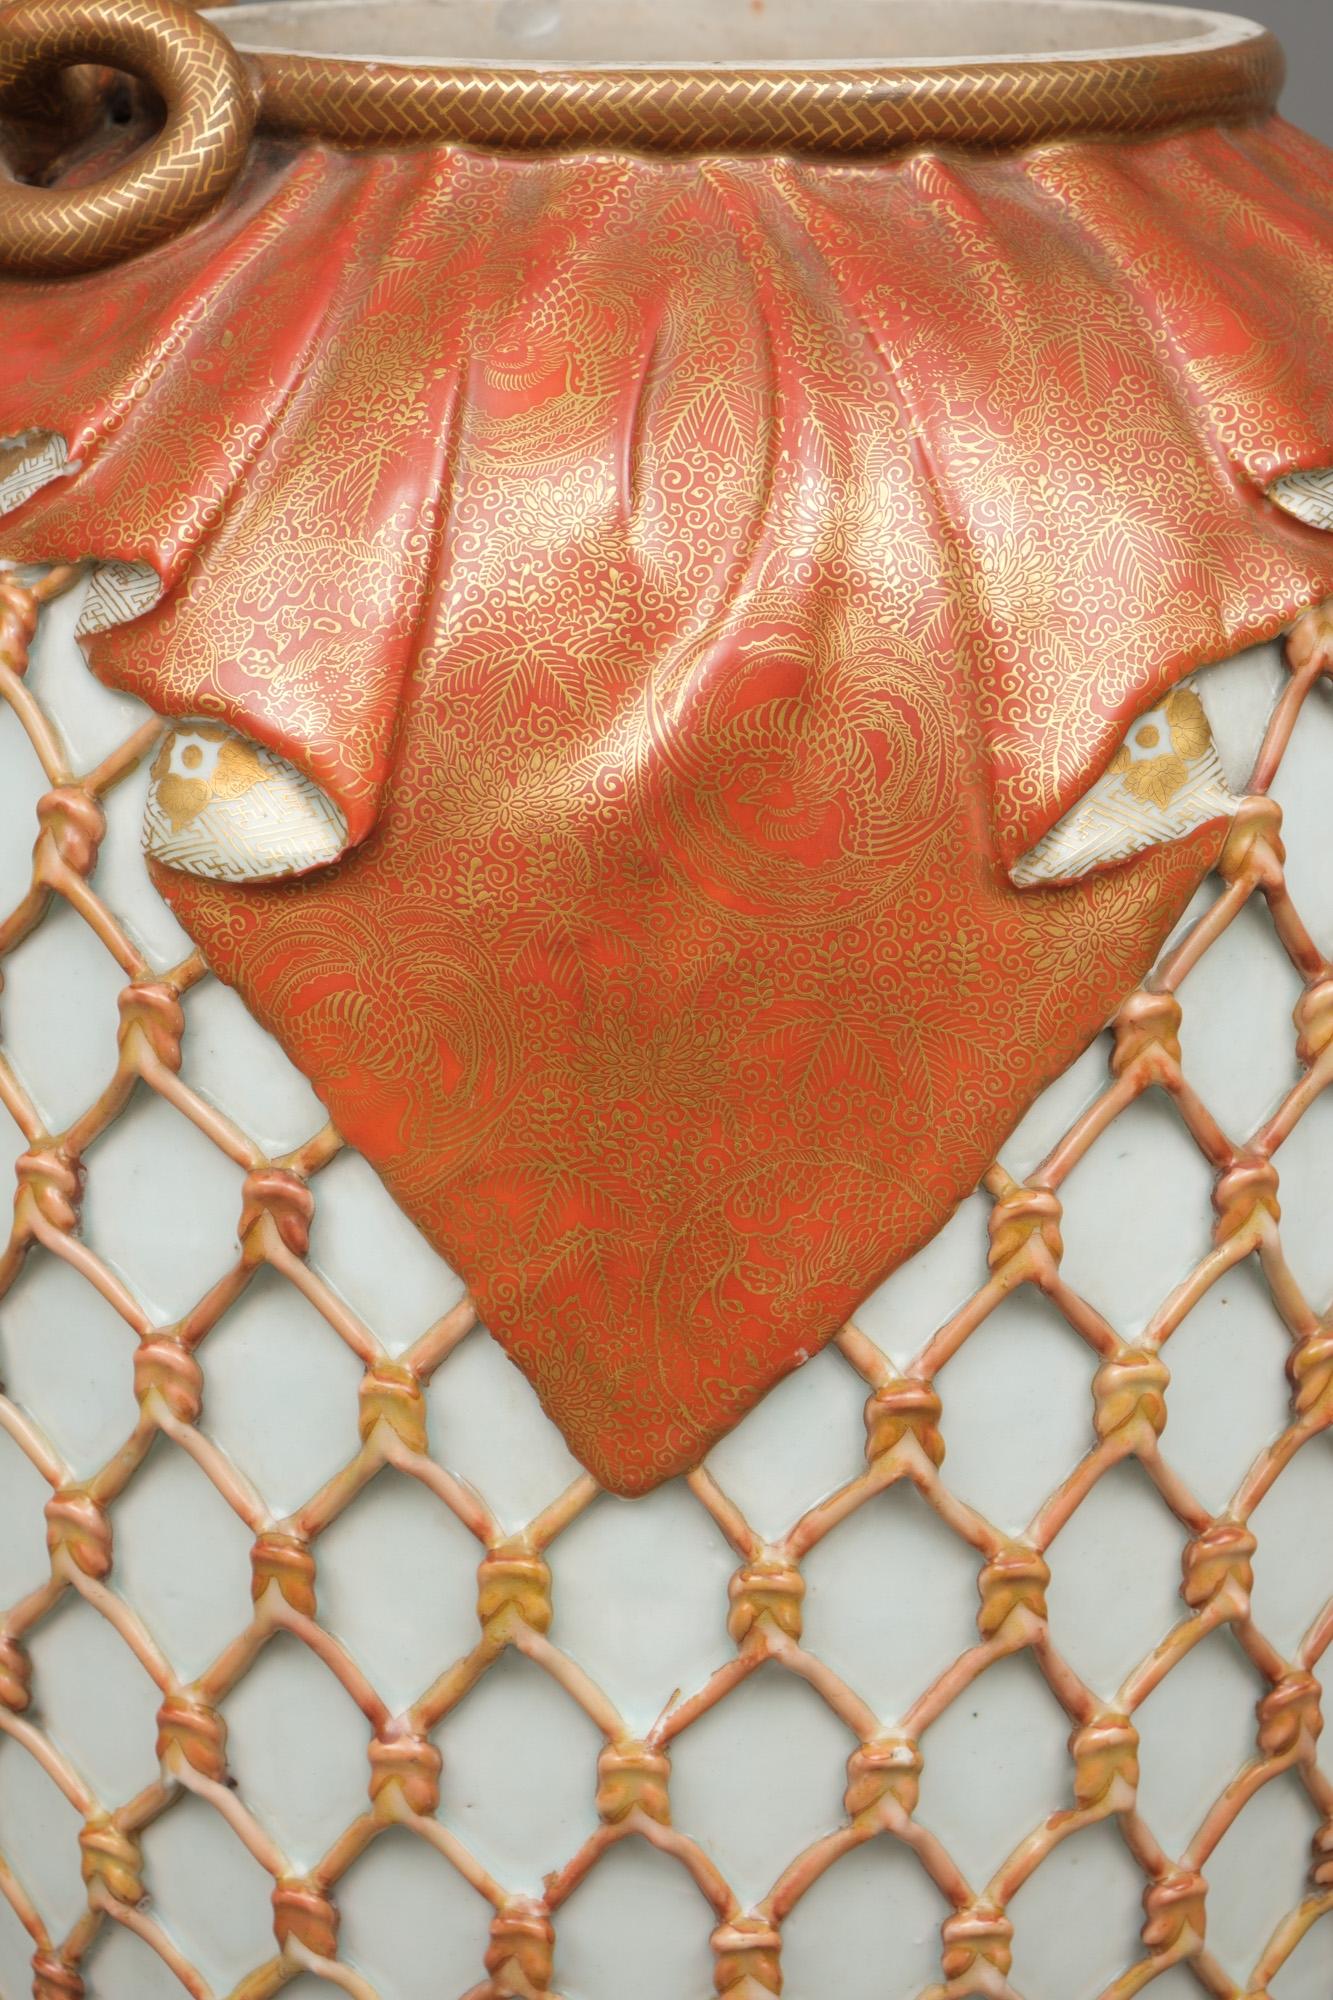 Grande jarre (tsubo) en porcelaine de Kyo d'une facture exceptionnelle, ornée d'un motif en relief d'inspiration naturaliste représentant un filet de couleur corail tendu autour du corps. Sur l'épaule est suspendue une magnifique étoffe glacée rouge